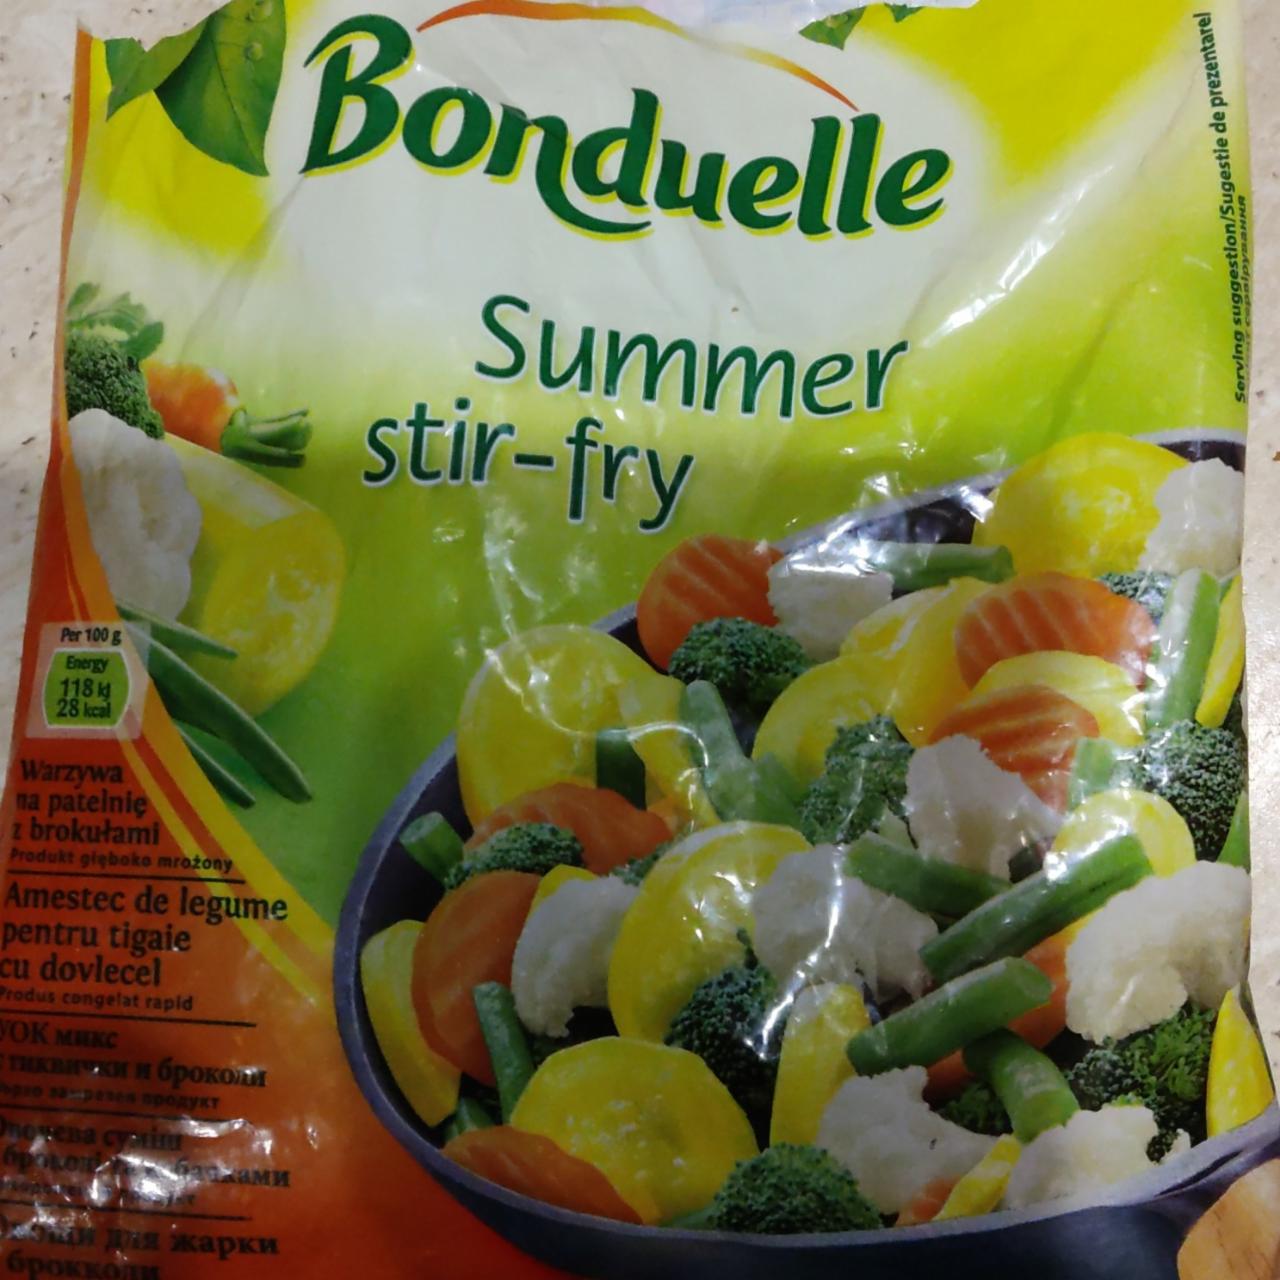 Фото - летняя овощная смесь для жарки summer stir-fry Bonduelle